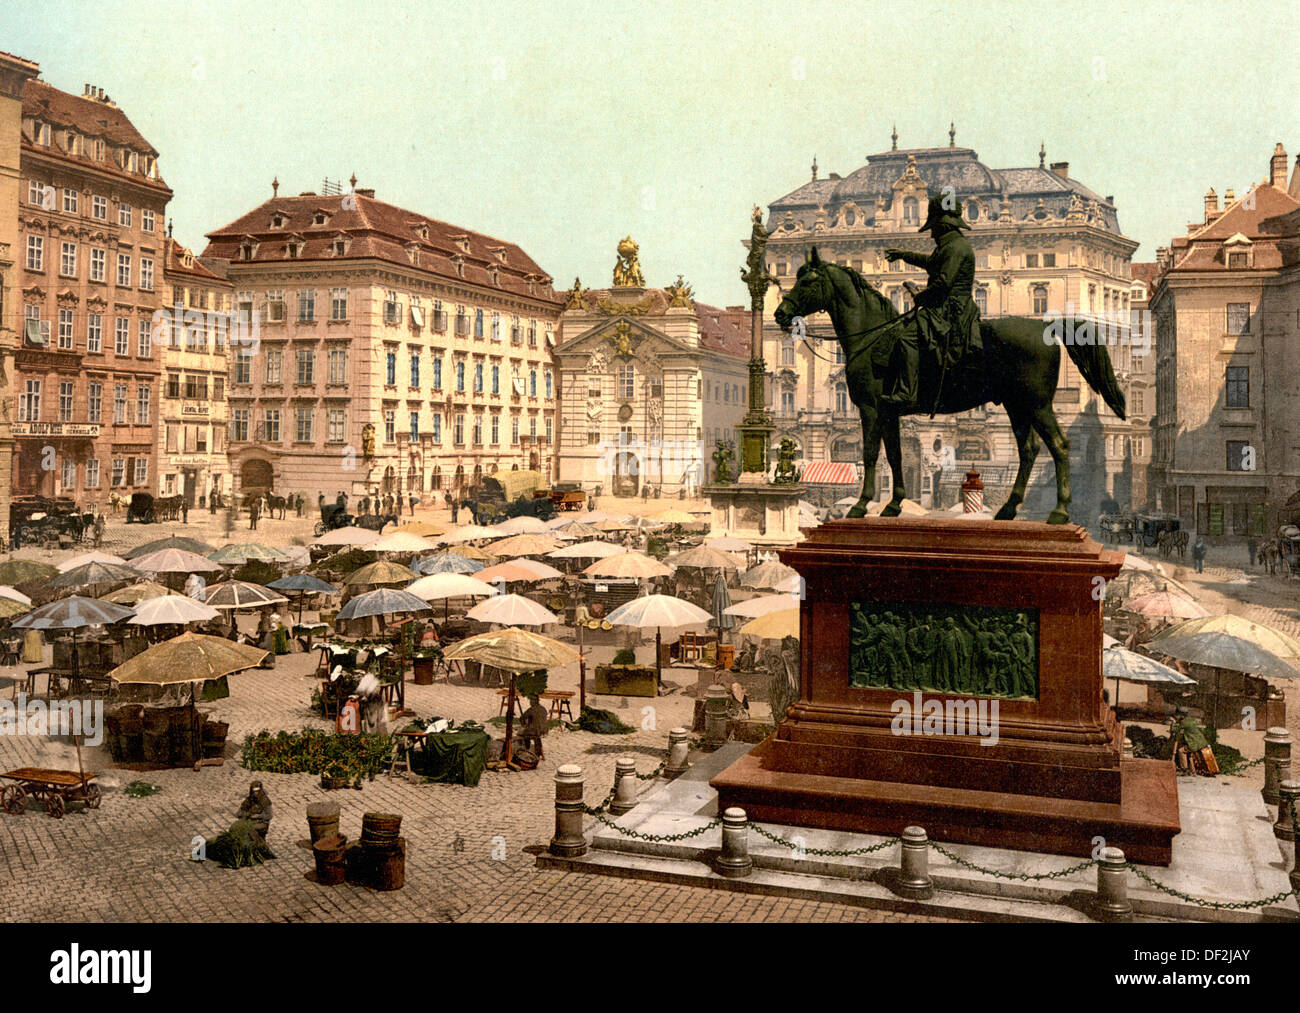 Marktplatz, Wien, Österreich-Ungarn um 1900 Stockfotografie - Alamy